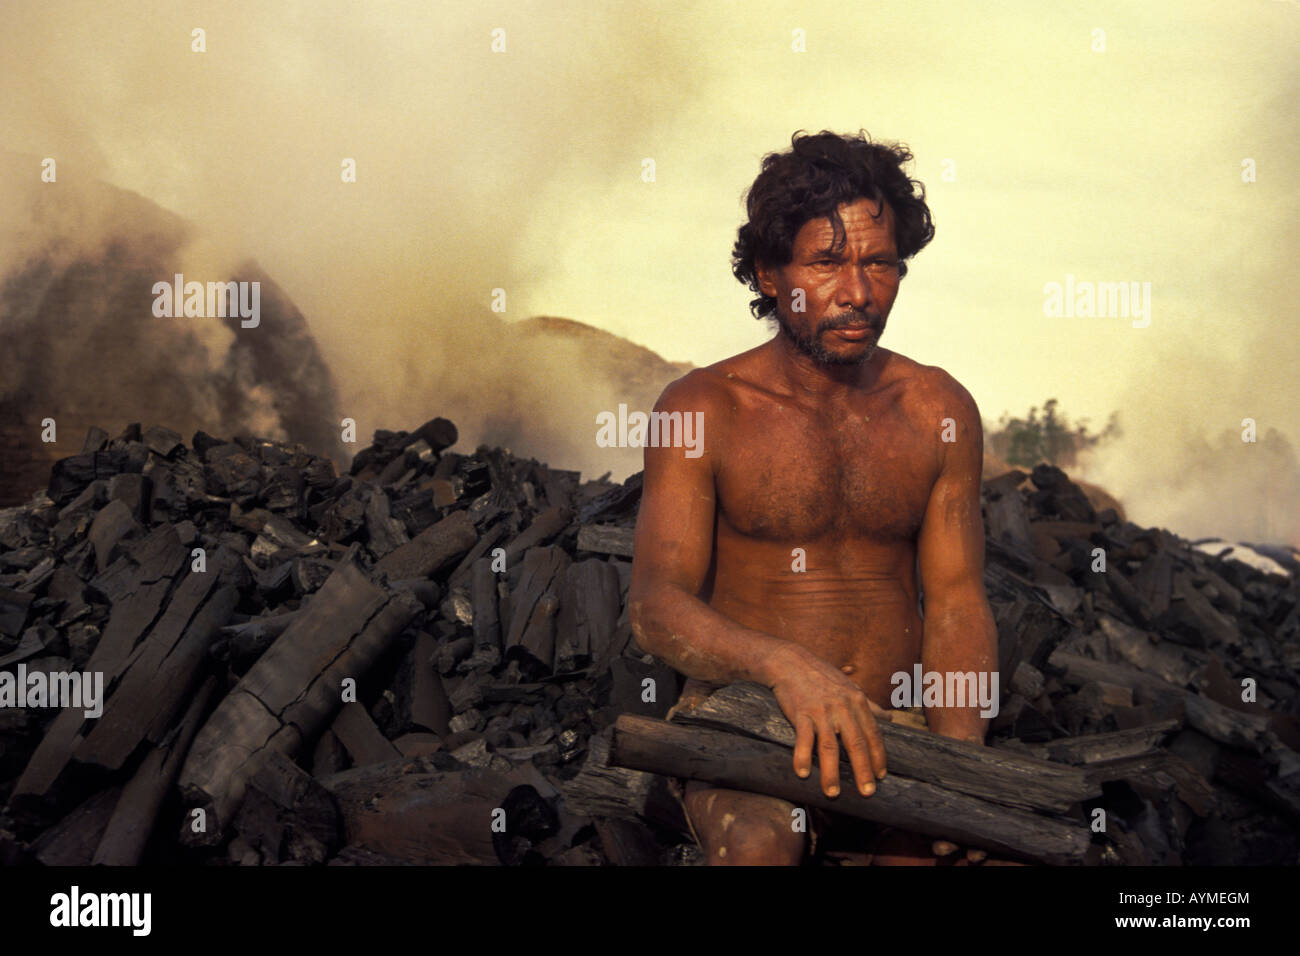 Arbeiter zu porträtieren Holzkohleproduktion Werk Brasilien Mato Grosso Do Sul Zustand Stockfoto